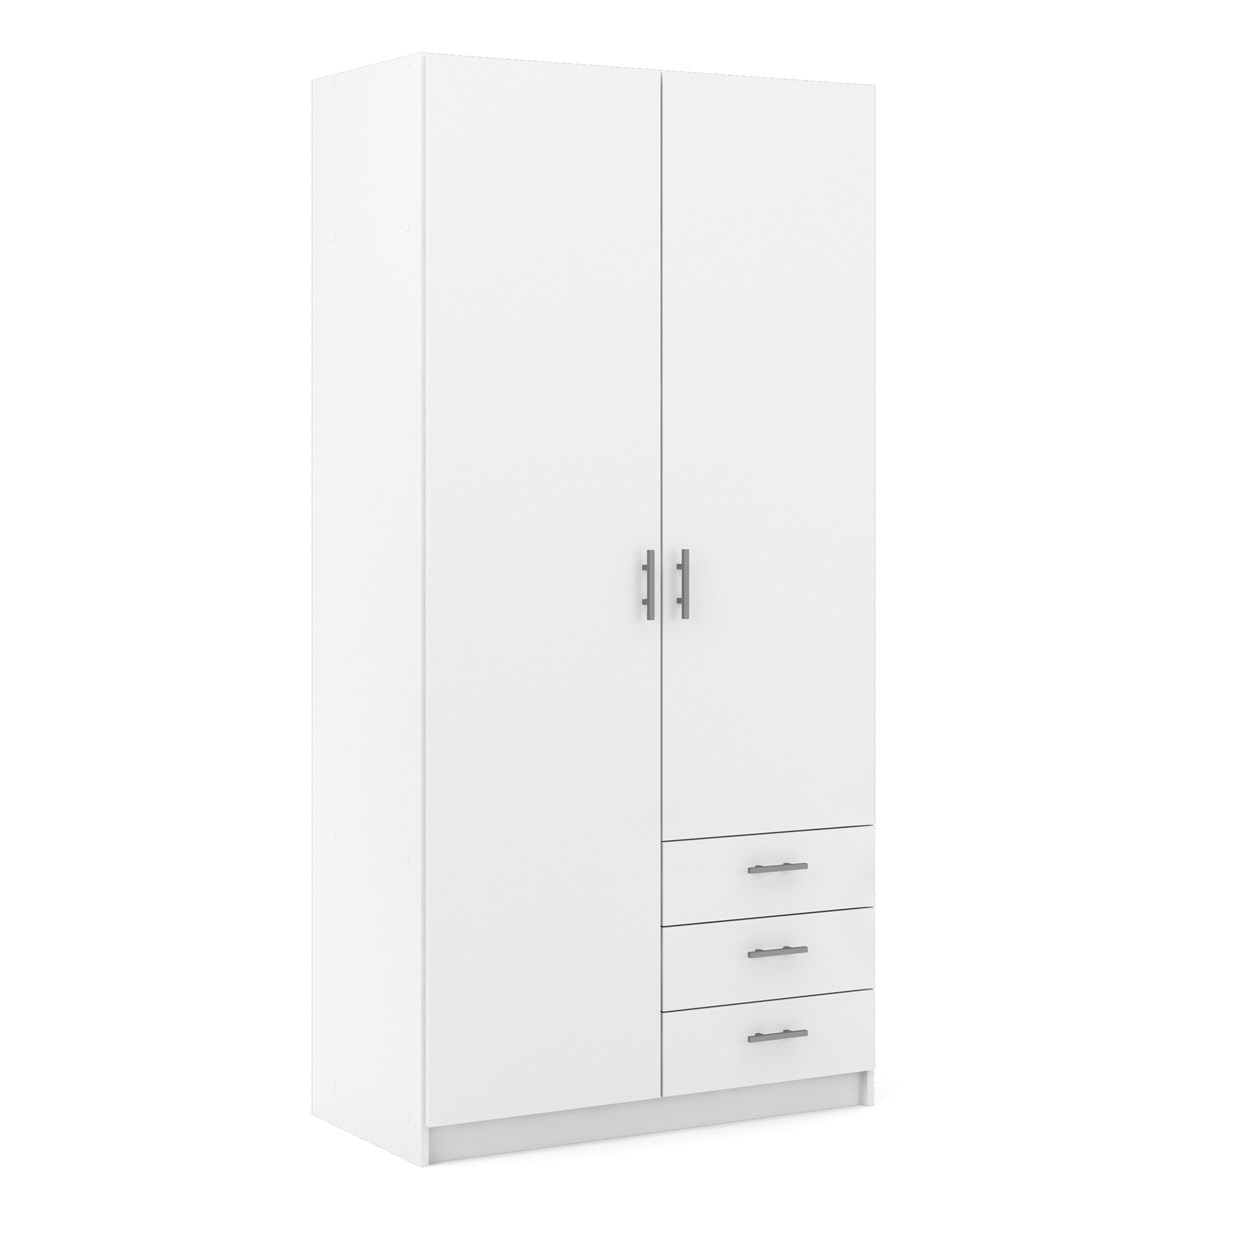 Dana hvidt garderobeskab 98,5 cm bredt med 2 døre og 3 skuffer.